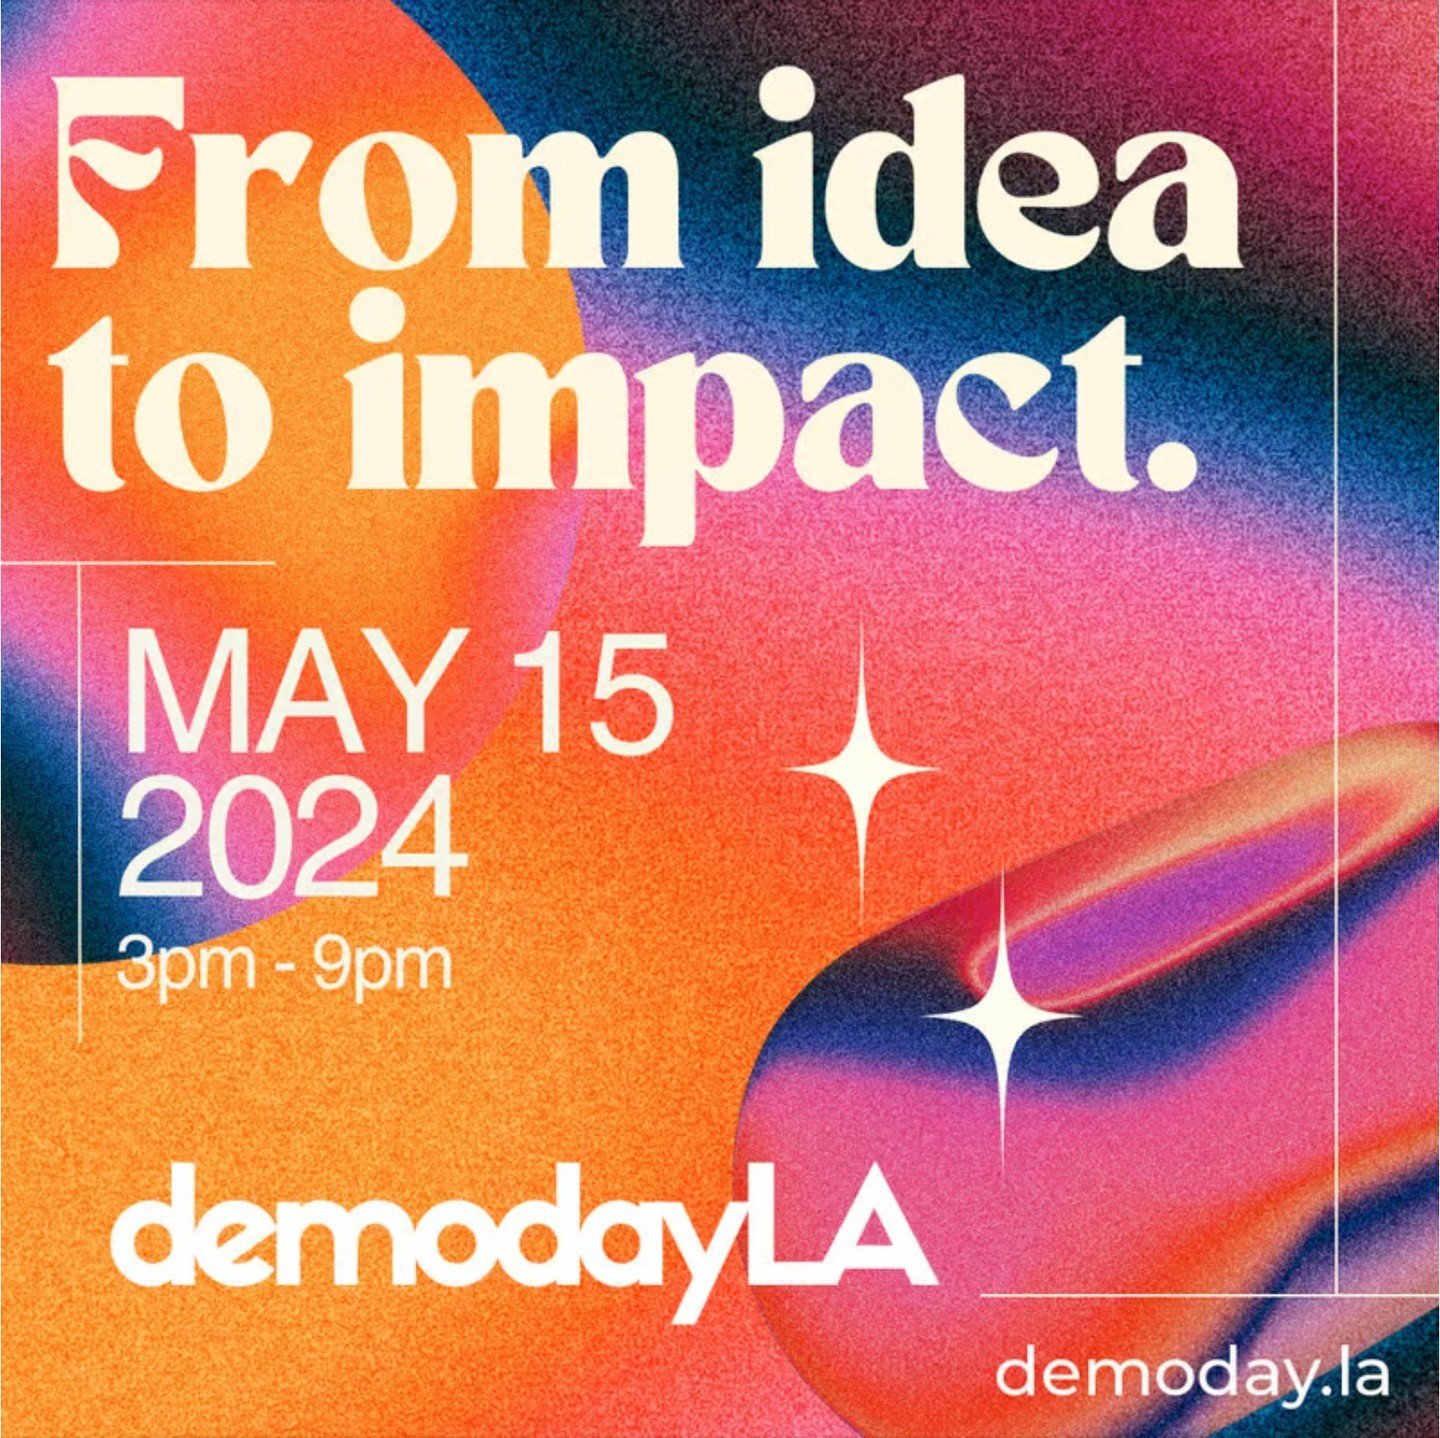 LA TECH EVENT: Demo Day LA